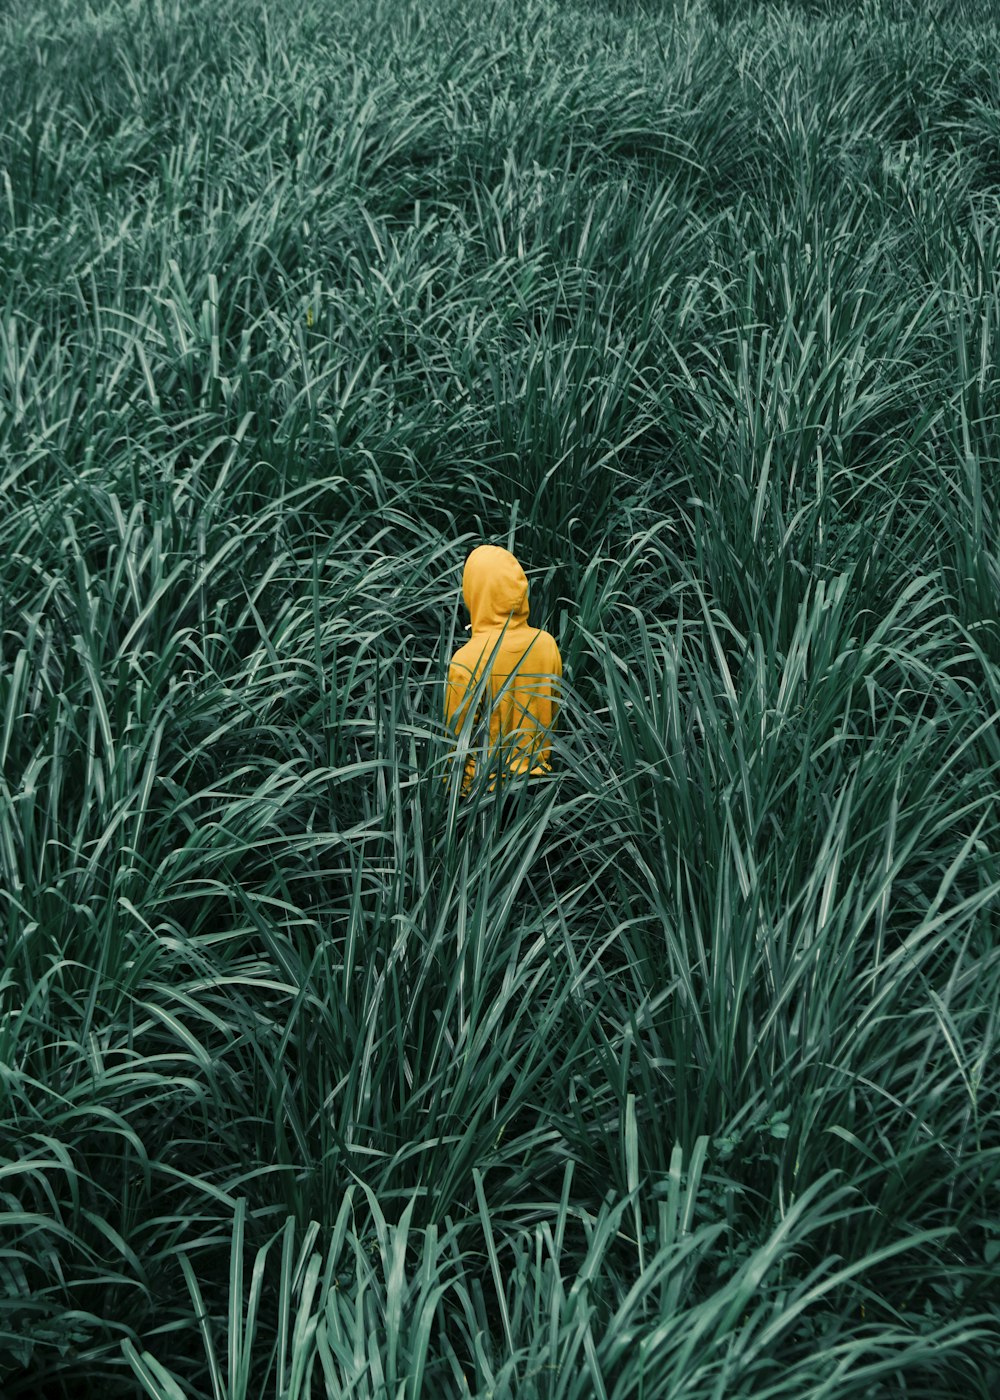 person wearing orange hooded jacket in in green grass field